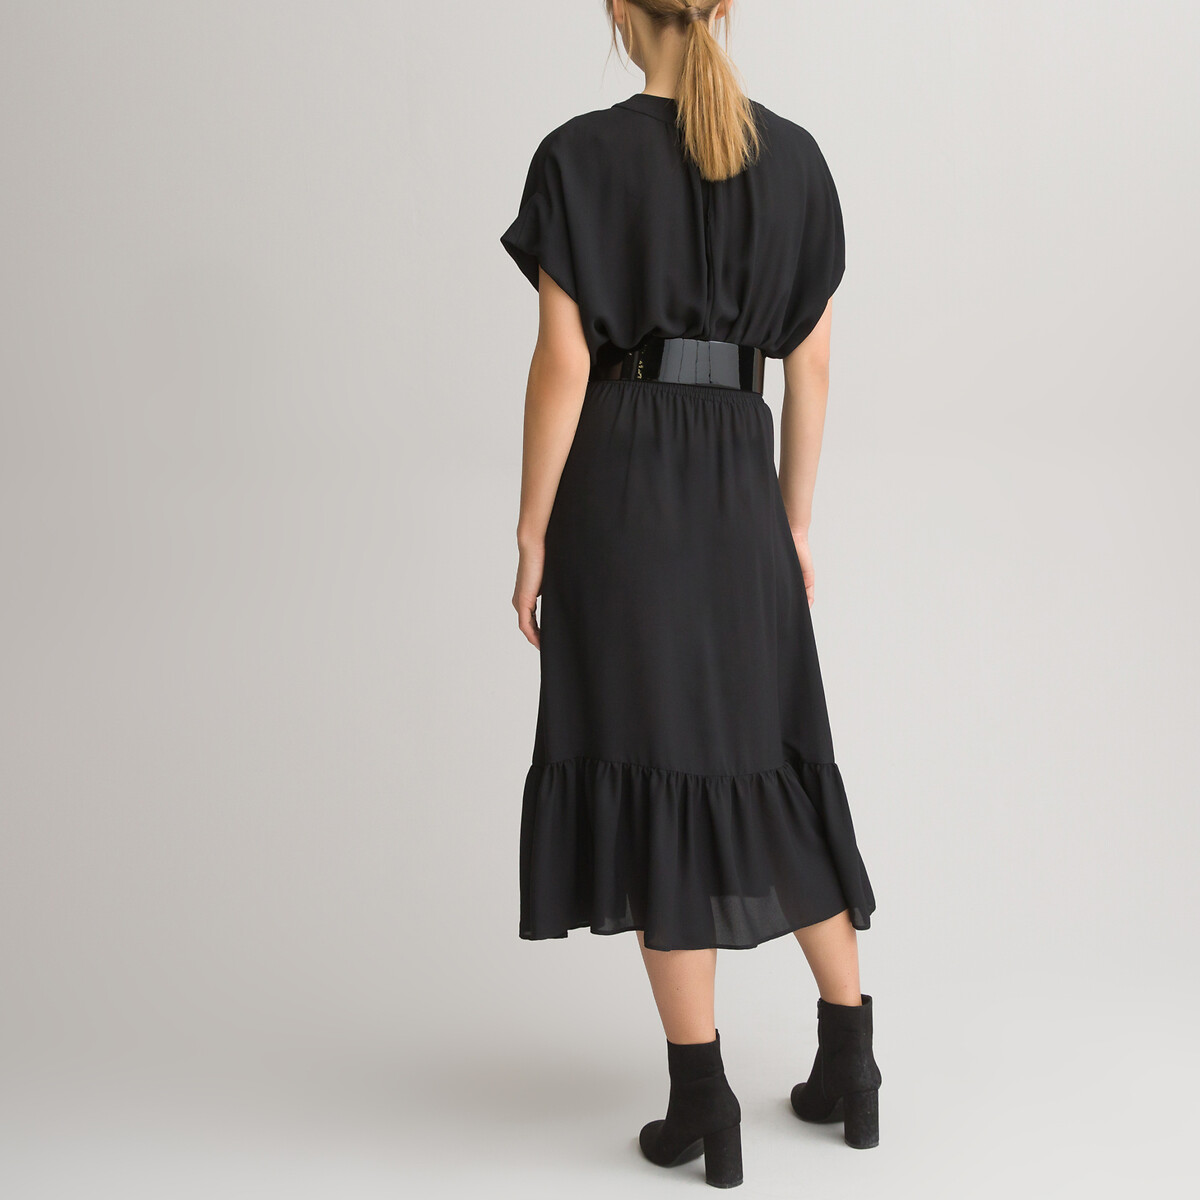 Платье LaRedoute Длинное с короткими рукавами 46 (FR) - 52 (RUS) черный, размер 46 (FR) - 52 (RUS) Длинное с короткими рукавами 46 (FR) - 52 (RUS) черный - фото 4